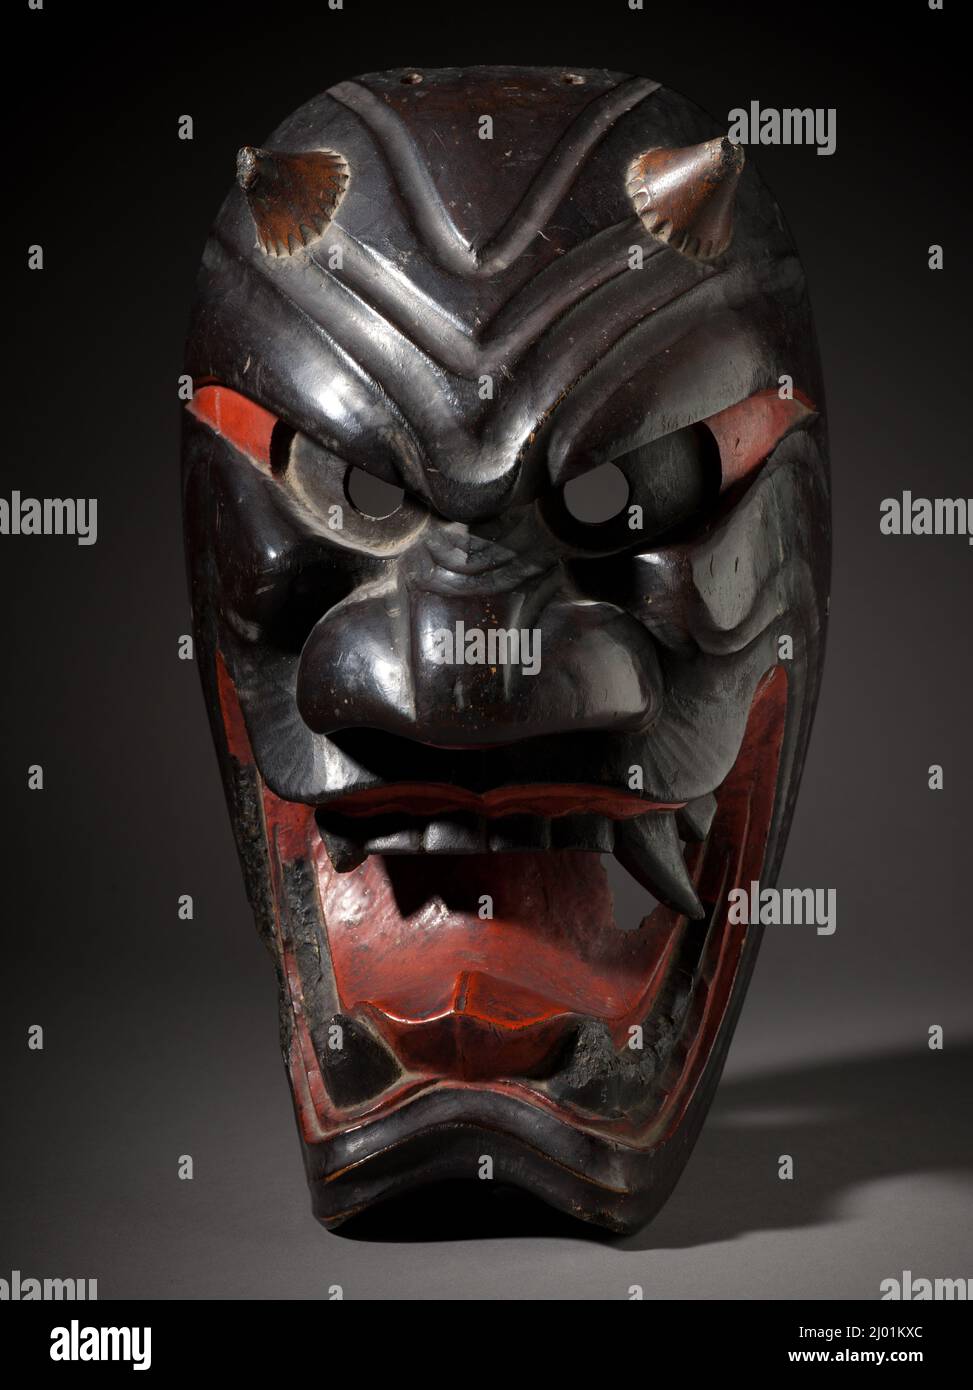 Máscara de demonio. Japón, finales del período Edo (principios del siglo 19th). Joyas y adornos; máscaras. Madera, laca roja y negra, latón, pigmento Foto de stock